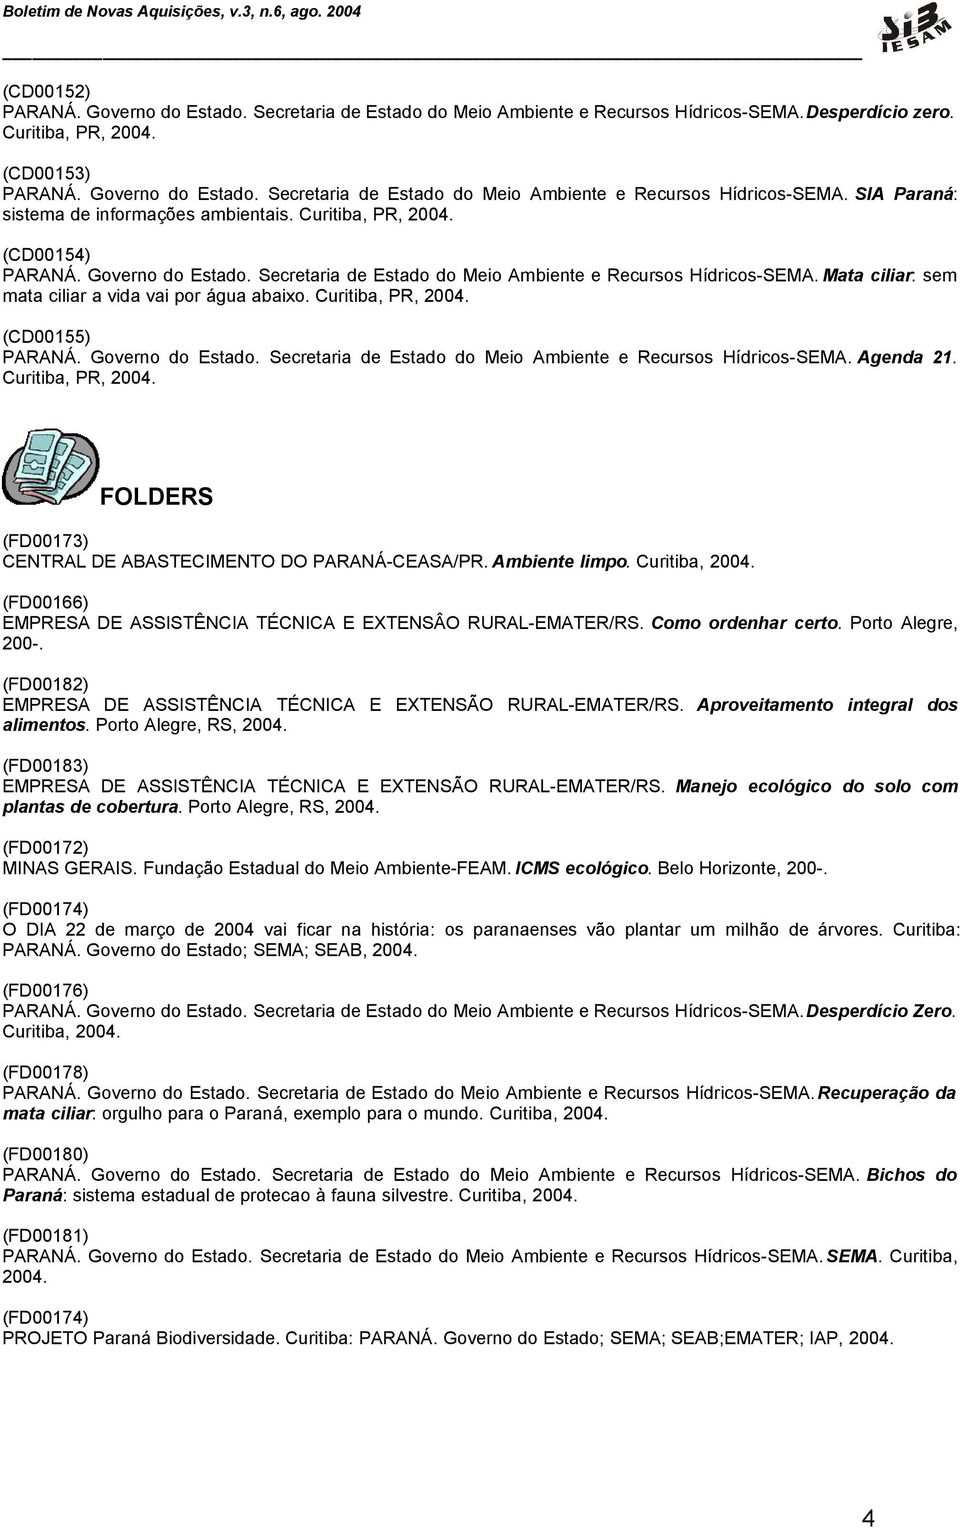 (CD00155) PARANÁ. Governo do Estado. Secretaria de Estado do Meio Ambiente e Recursos Hídricos-SEMA. Agenda 21. Curitiba, PR, 2004. FOLDERS (FD00173) CENTRAL DE ABASTECIMENTO DO PARANÁ-CEASA/PR.